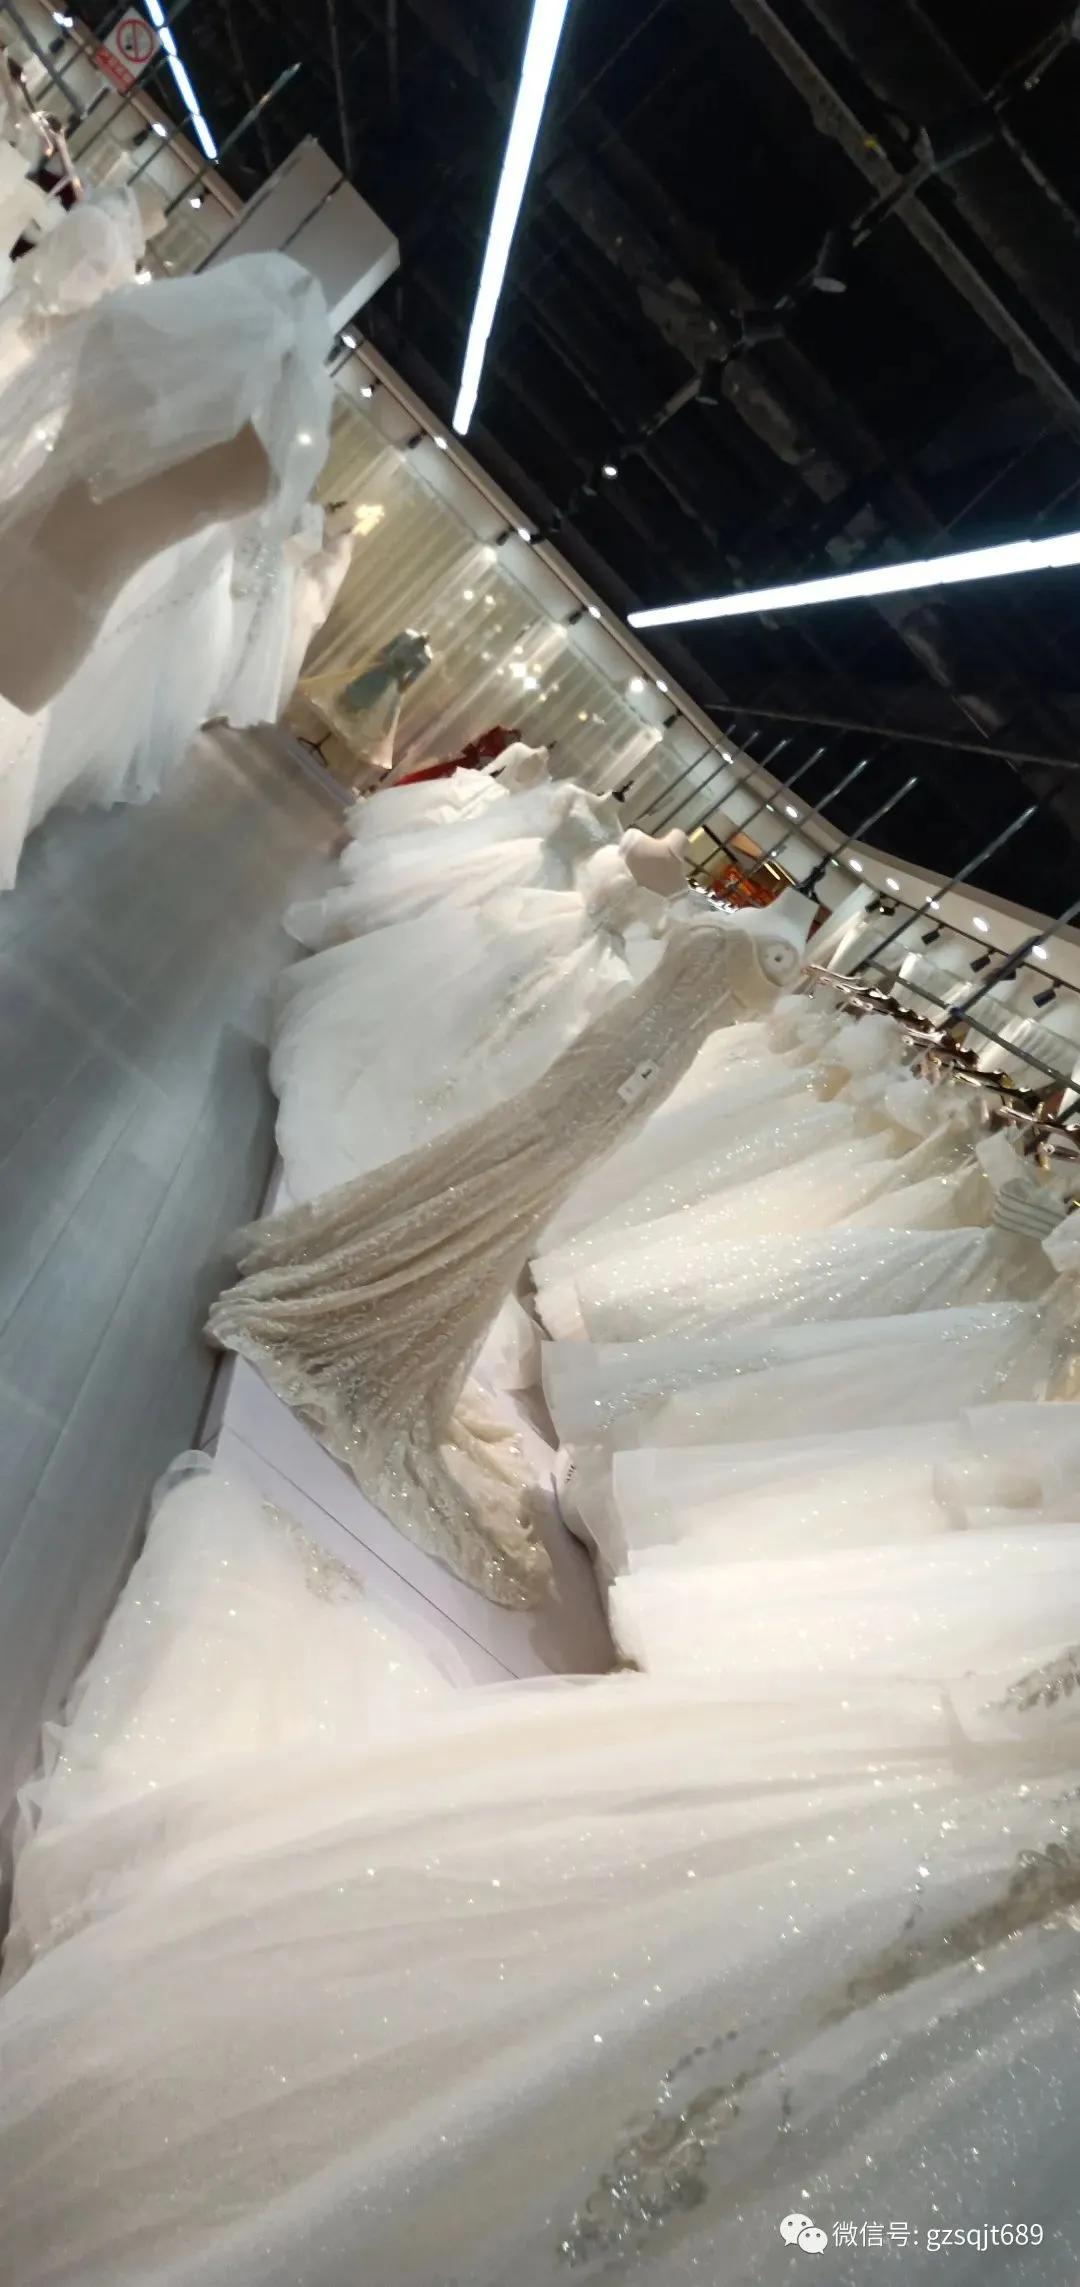 婚纱、礼服、秀禾服、旗袍、西装专属私人定制与出租 ~ 项目